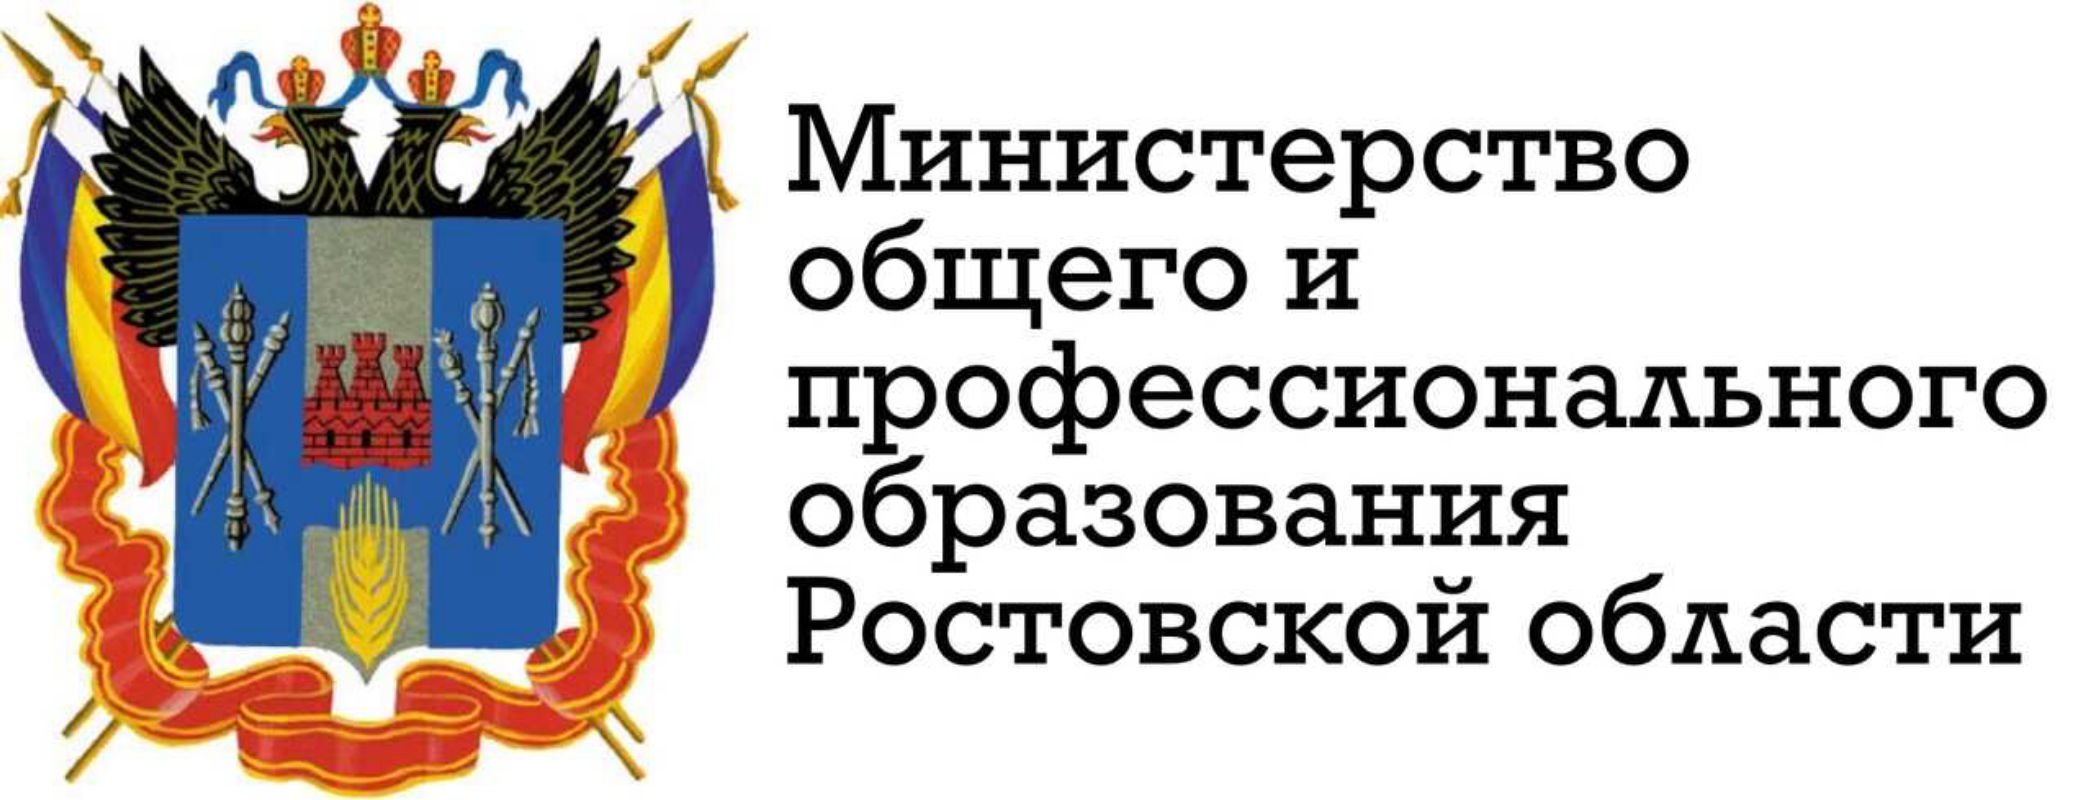 Эмблема Министерства образования Ростовской